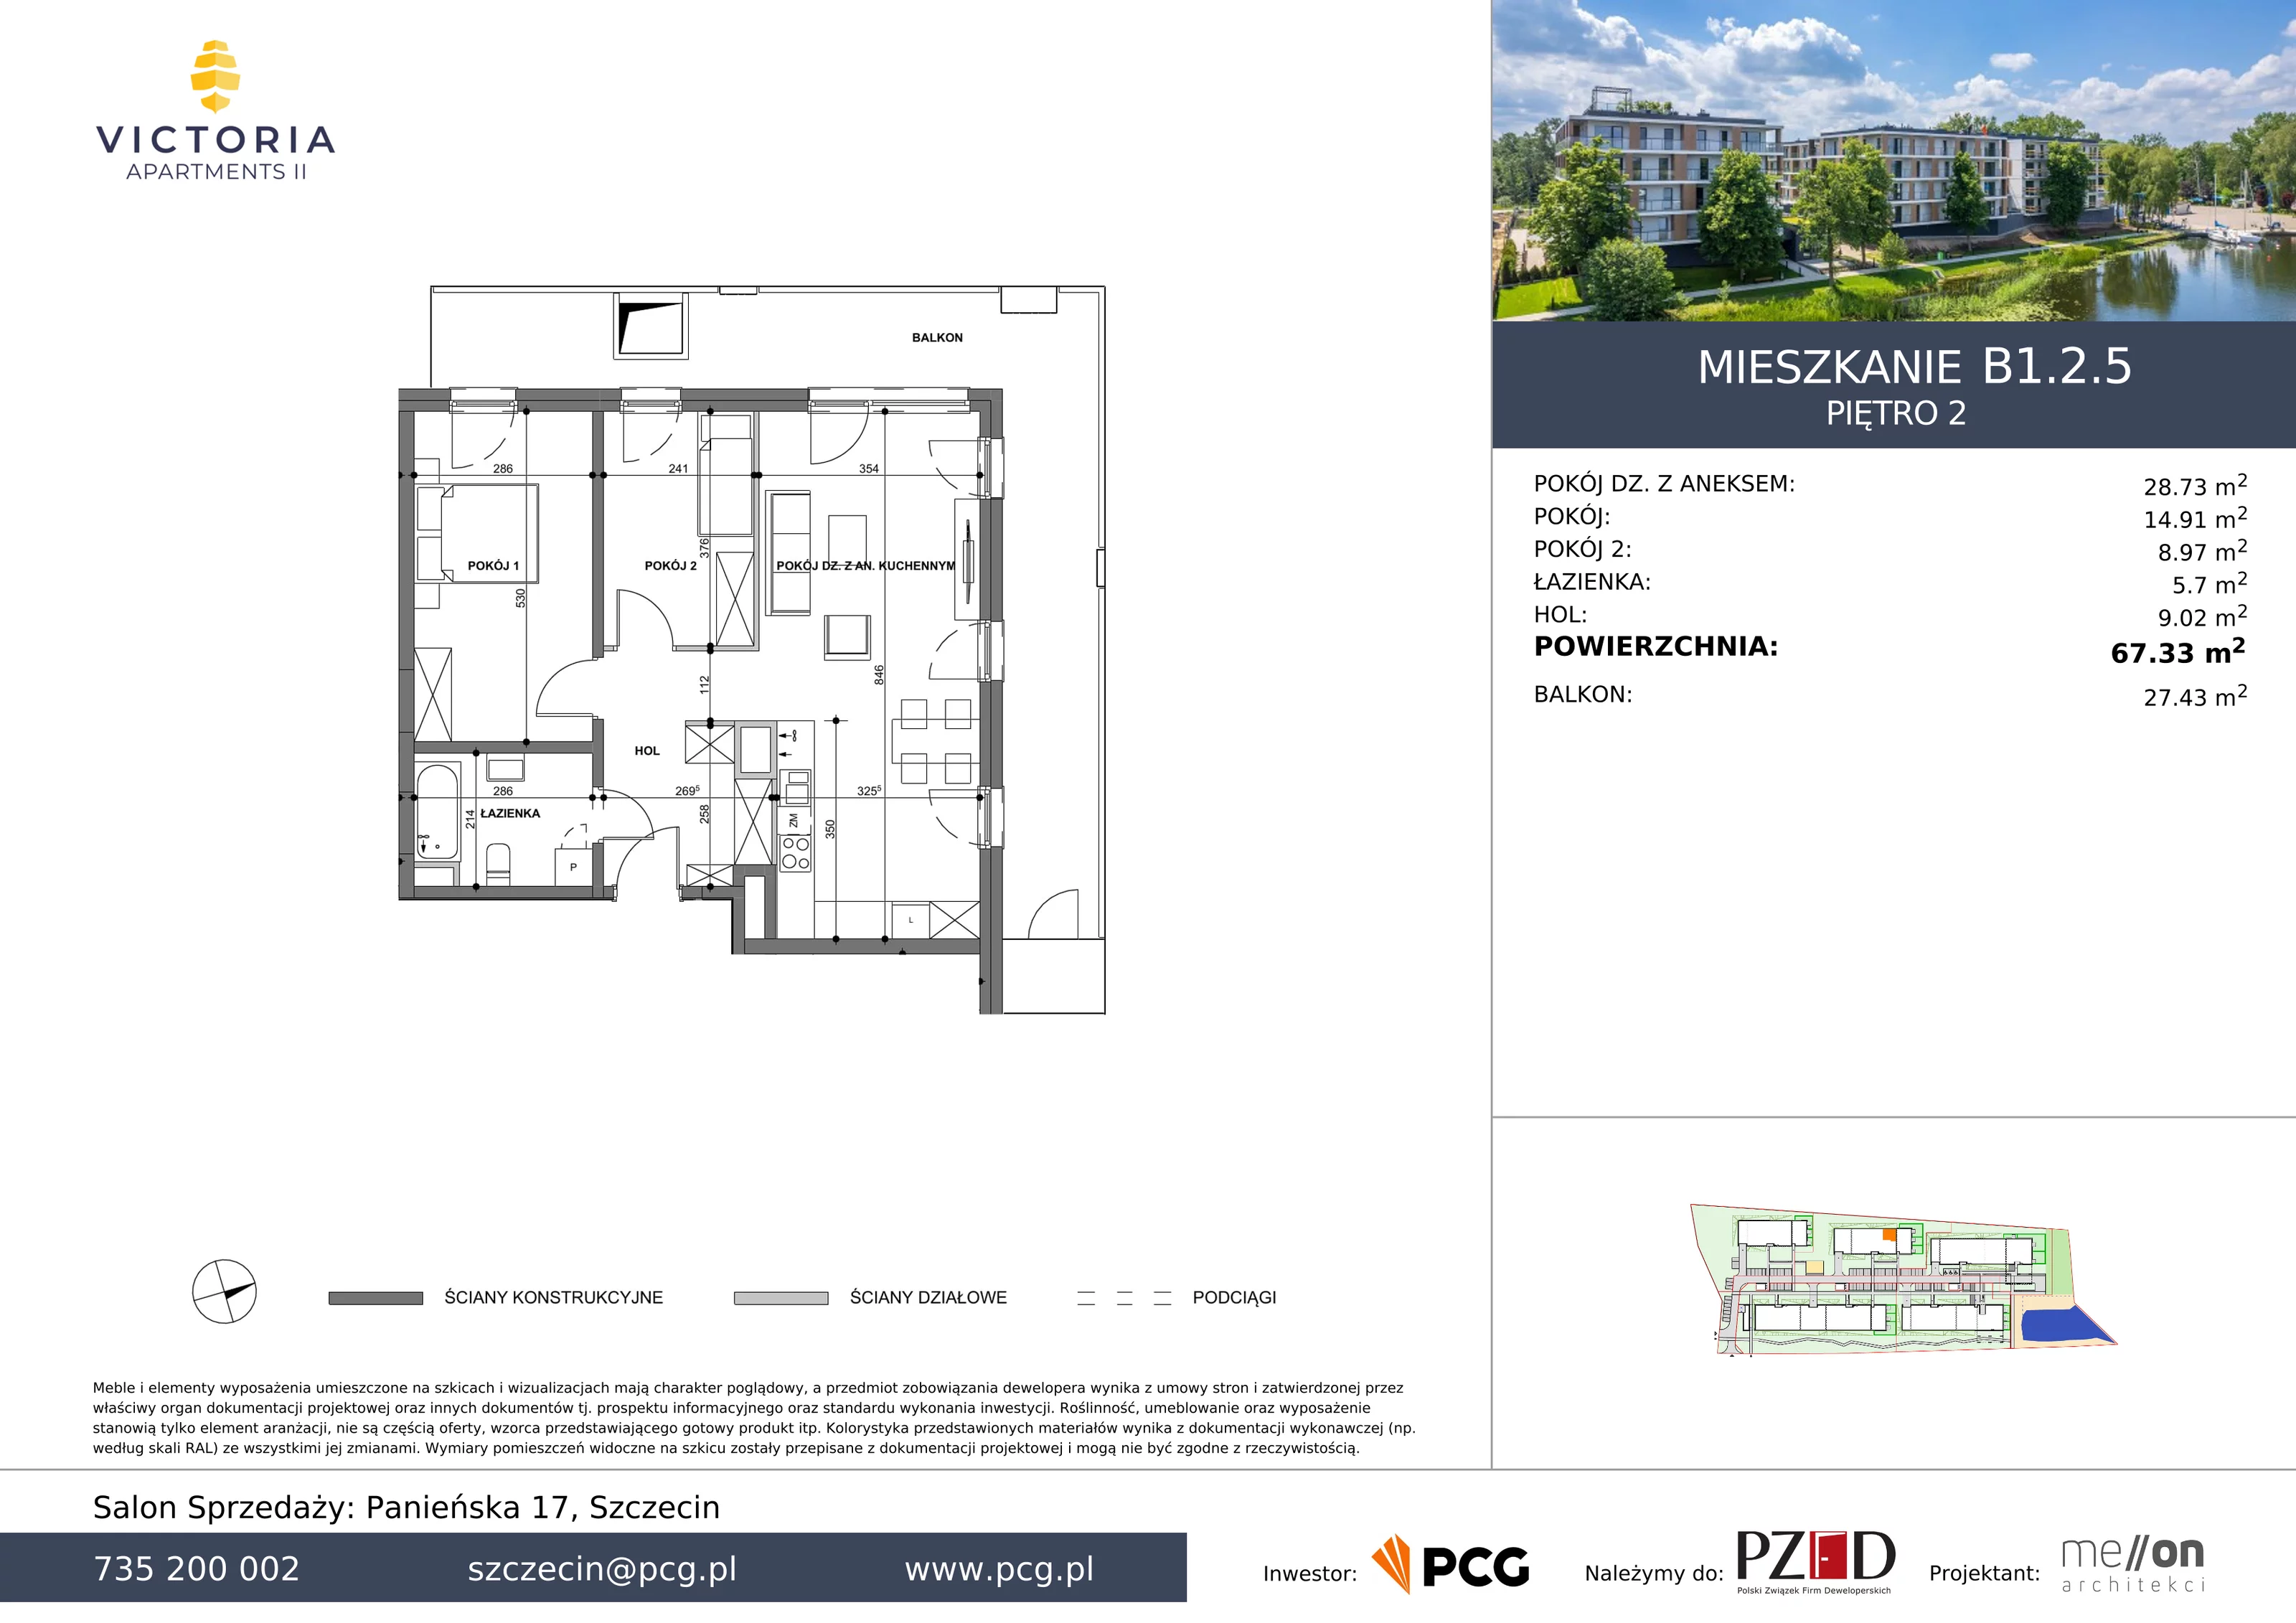 Apartament 67,33 m², piętro 2, oferta nr B1.2.5, Victoria Apartments II, Szczecin, Prawobrzeże, Dąbie, ul. Przestrzenna